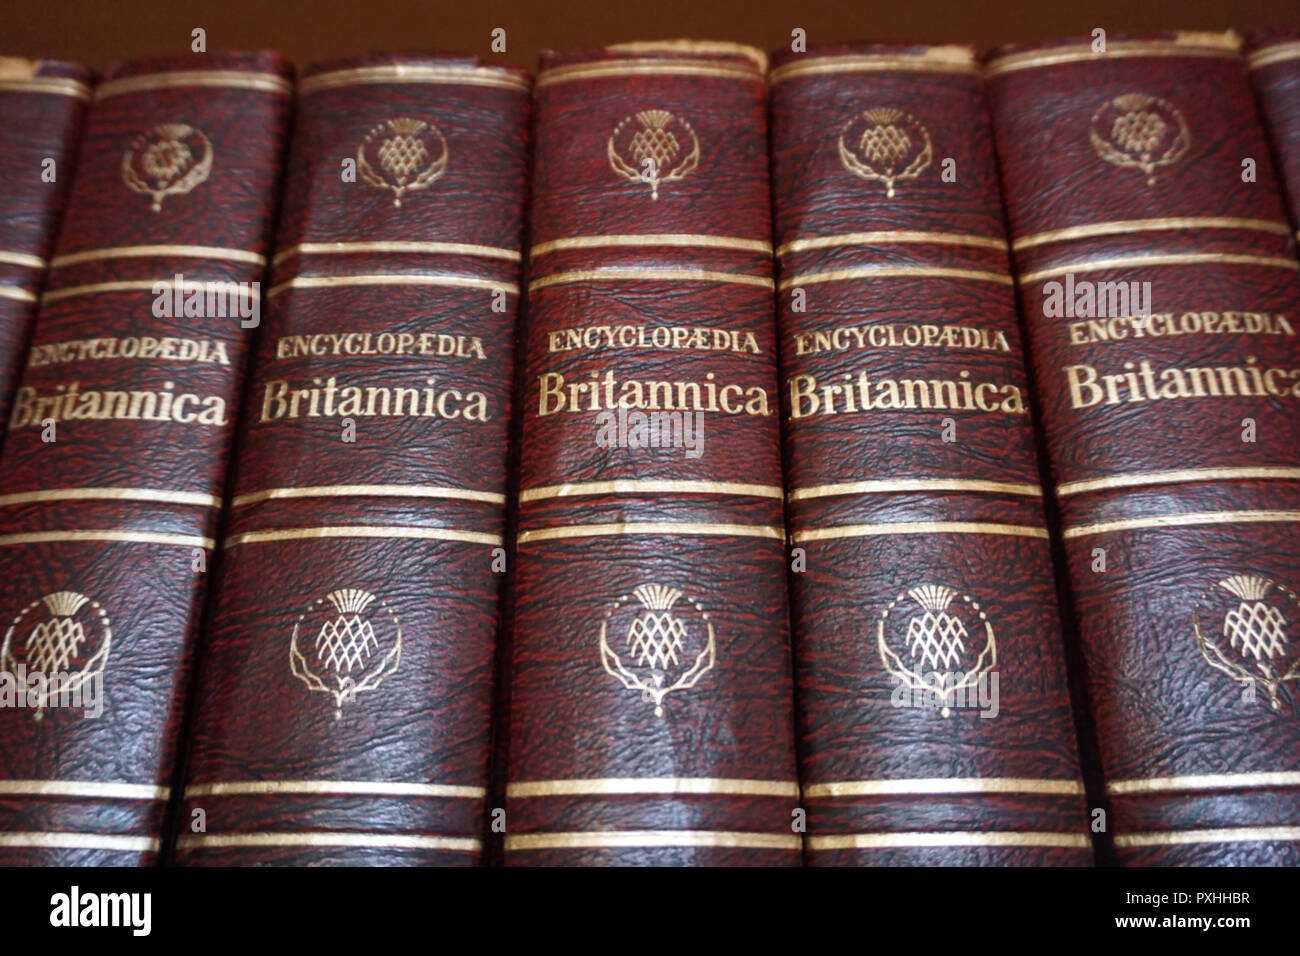 Rijeka, Kroatien, 25. September 2018. Encyclopedia Britannica Serie Bücher gesäumt, die auf der Bibliothek Bücherregal Stockfoto